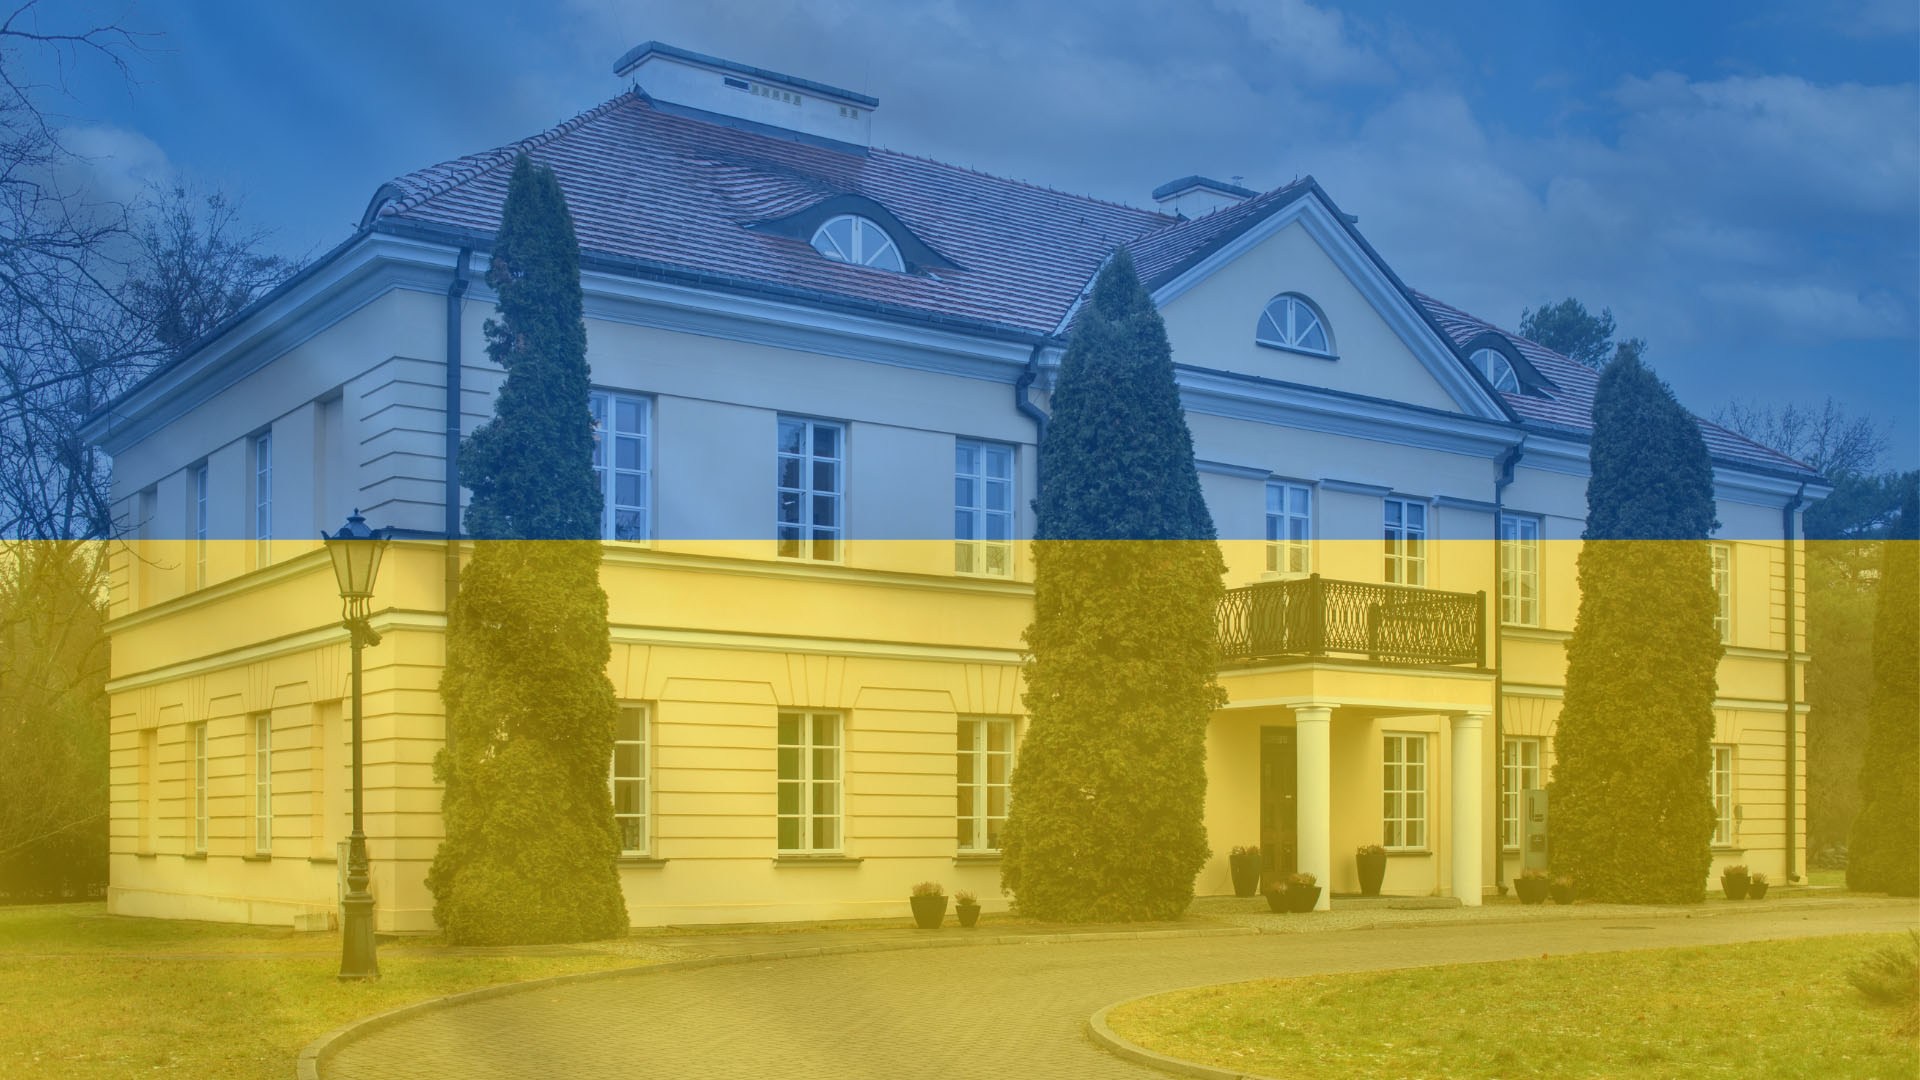 Konfederacja Lewiatan włącza europejski biznes w zbiórkę pieniędzy na pomoc Ukrainie